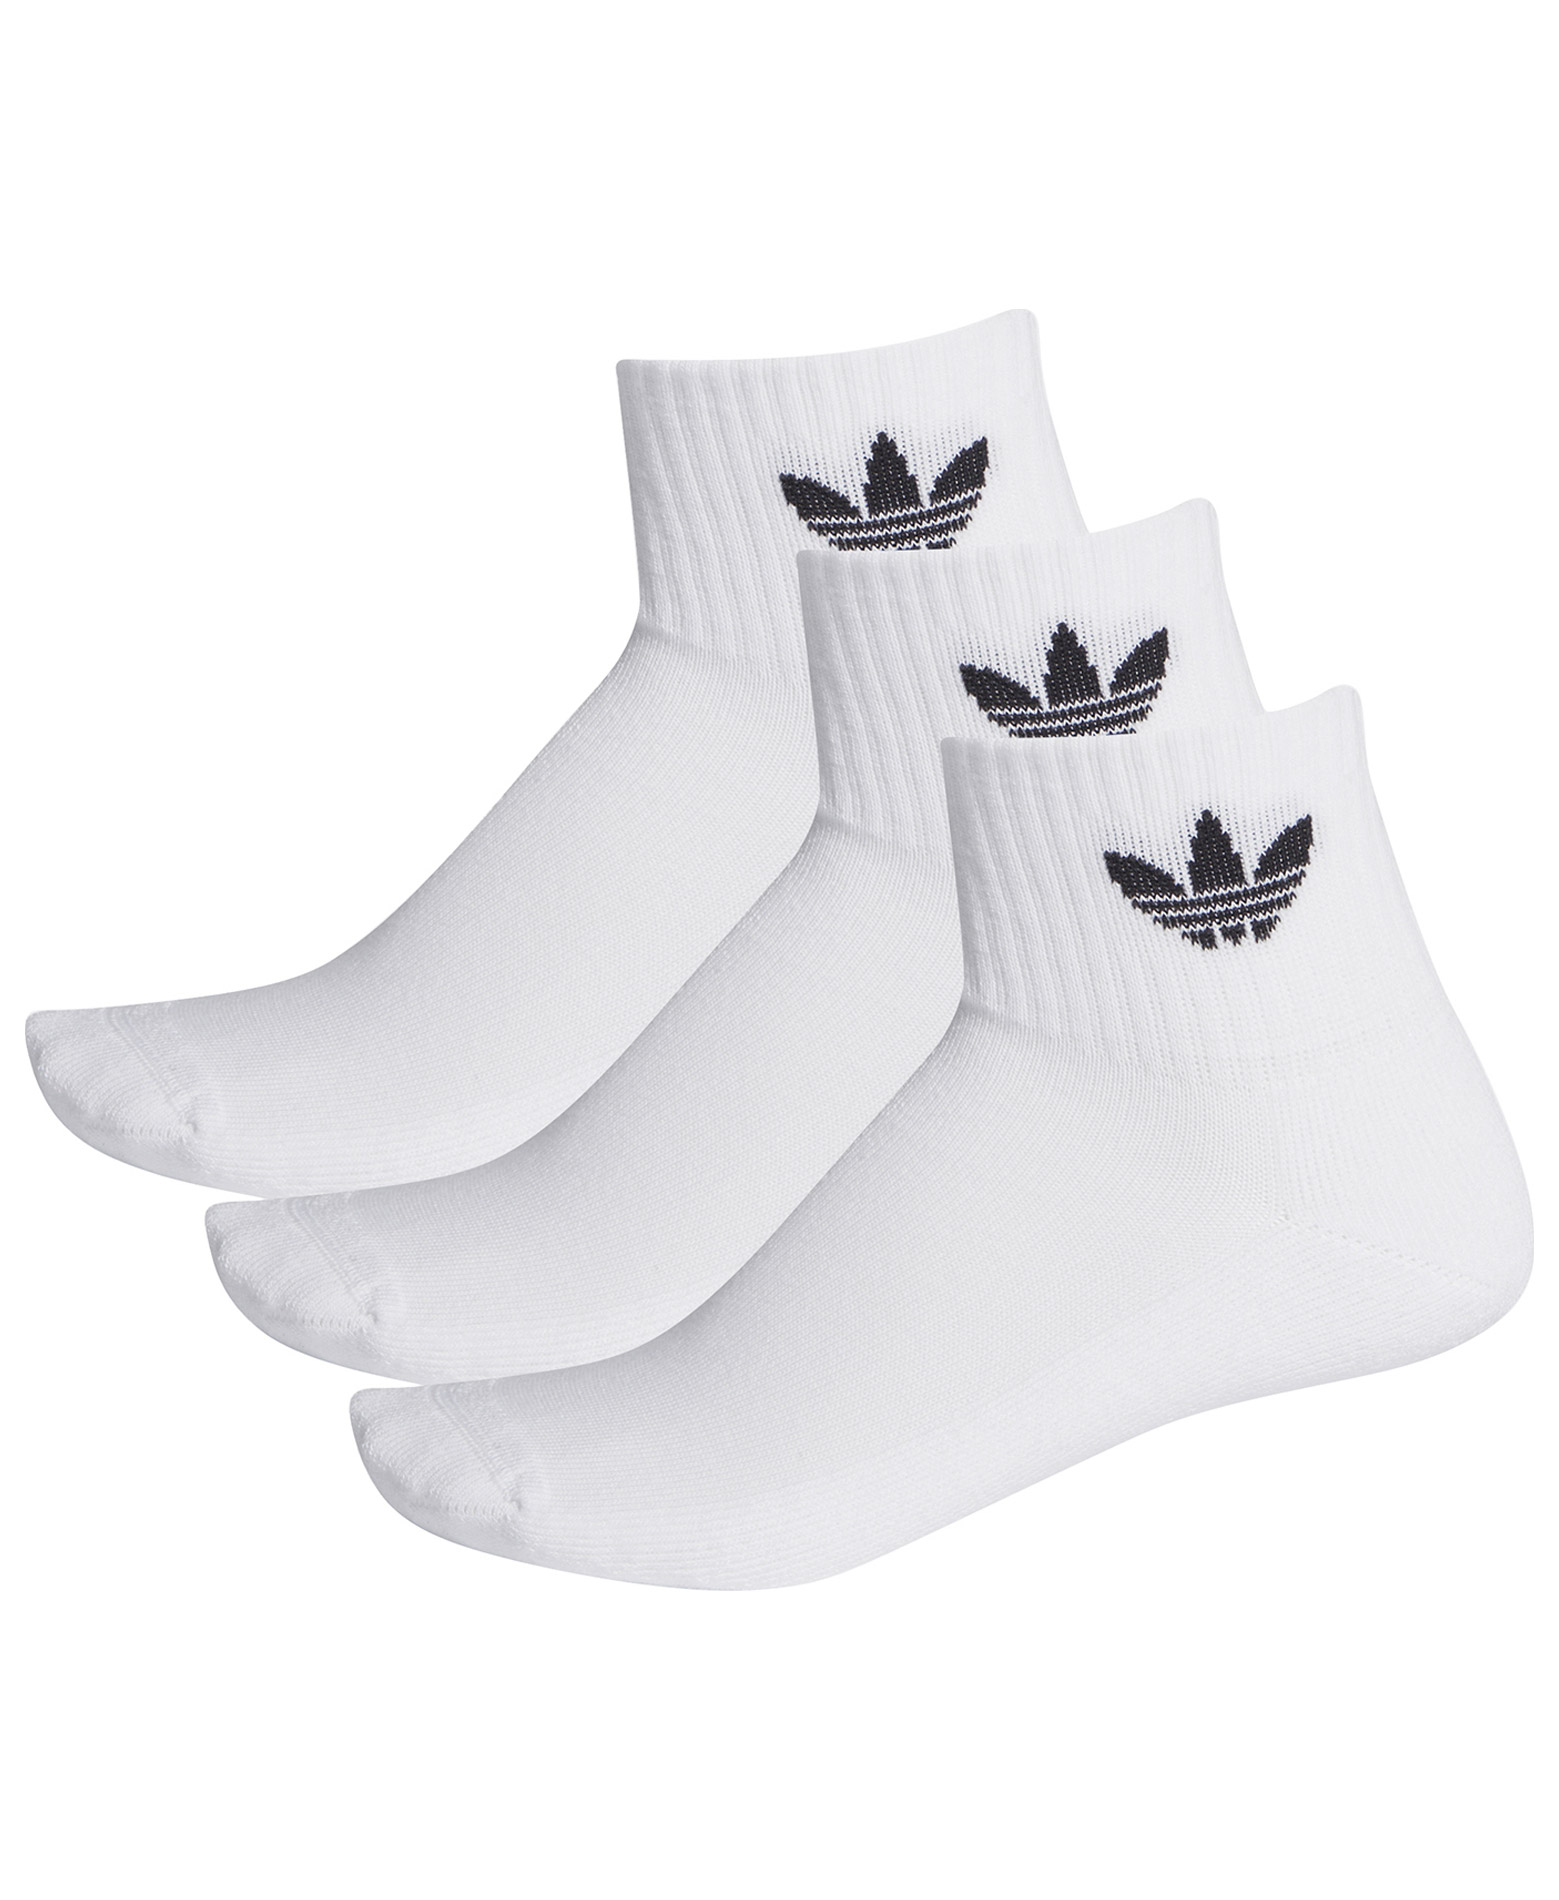 Adidas Originals Mid-Cut Crew Socks